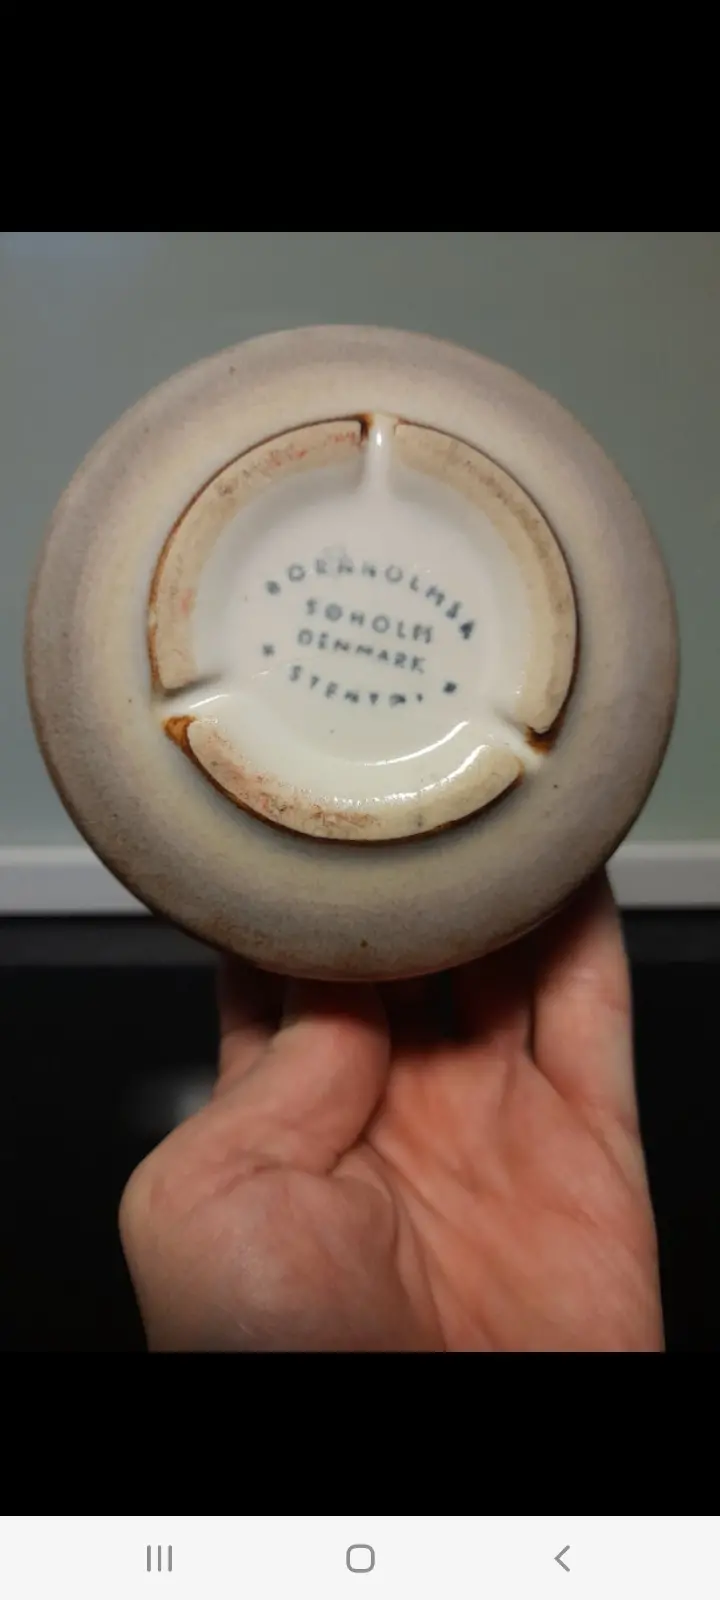 Søholm keramik